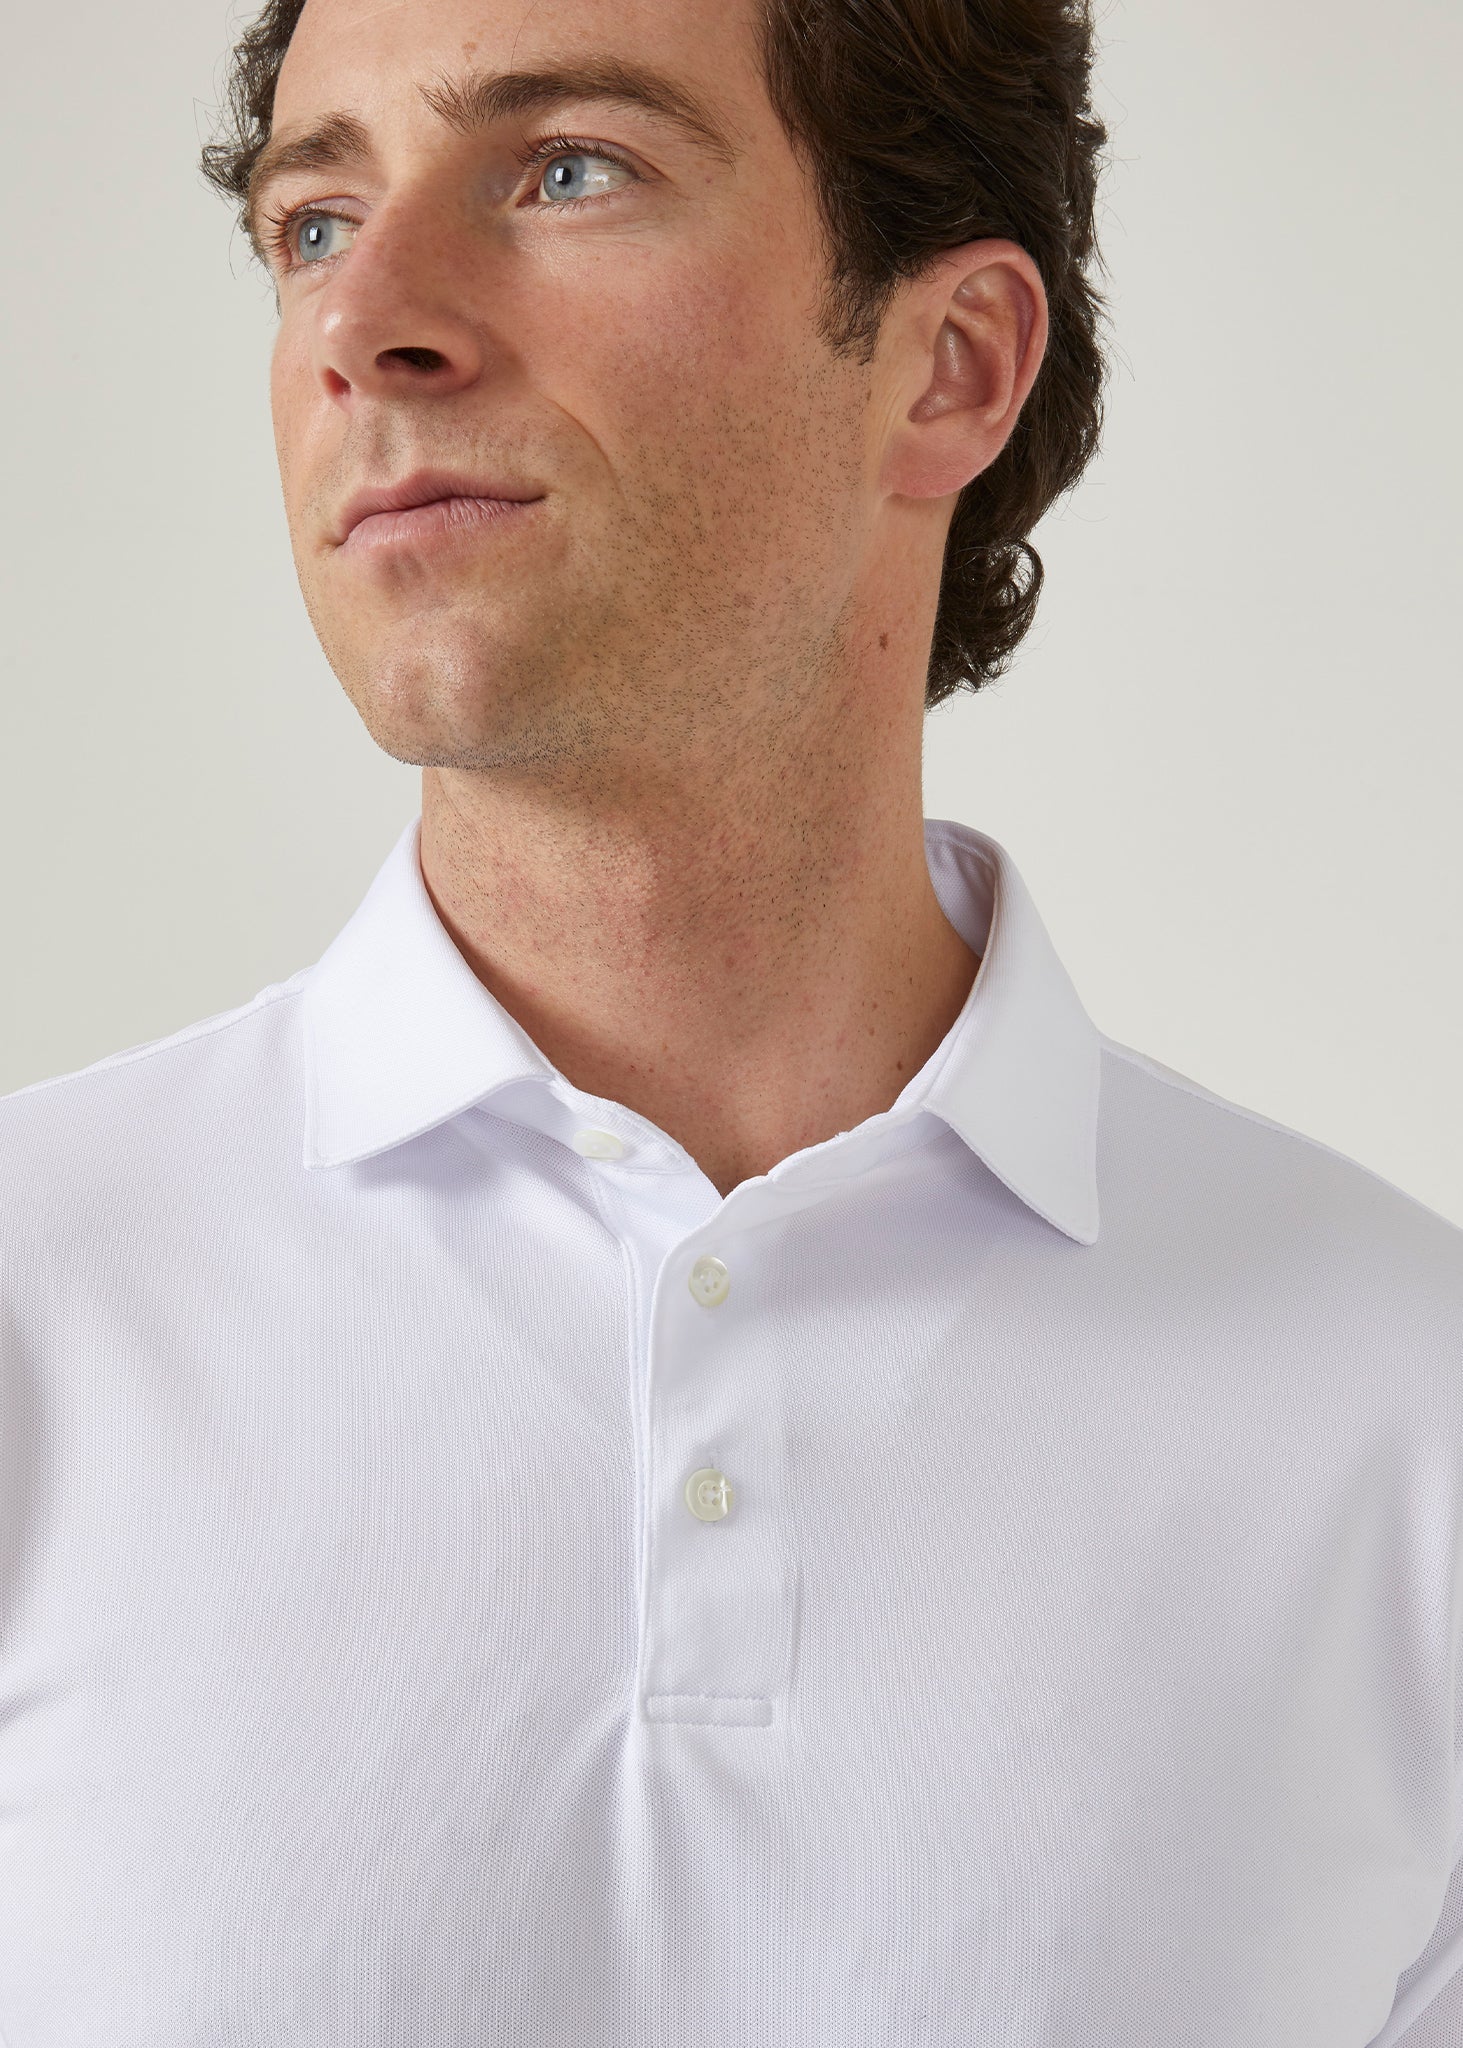 Men's 3 button polo shirt in white.